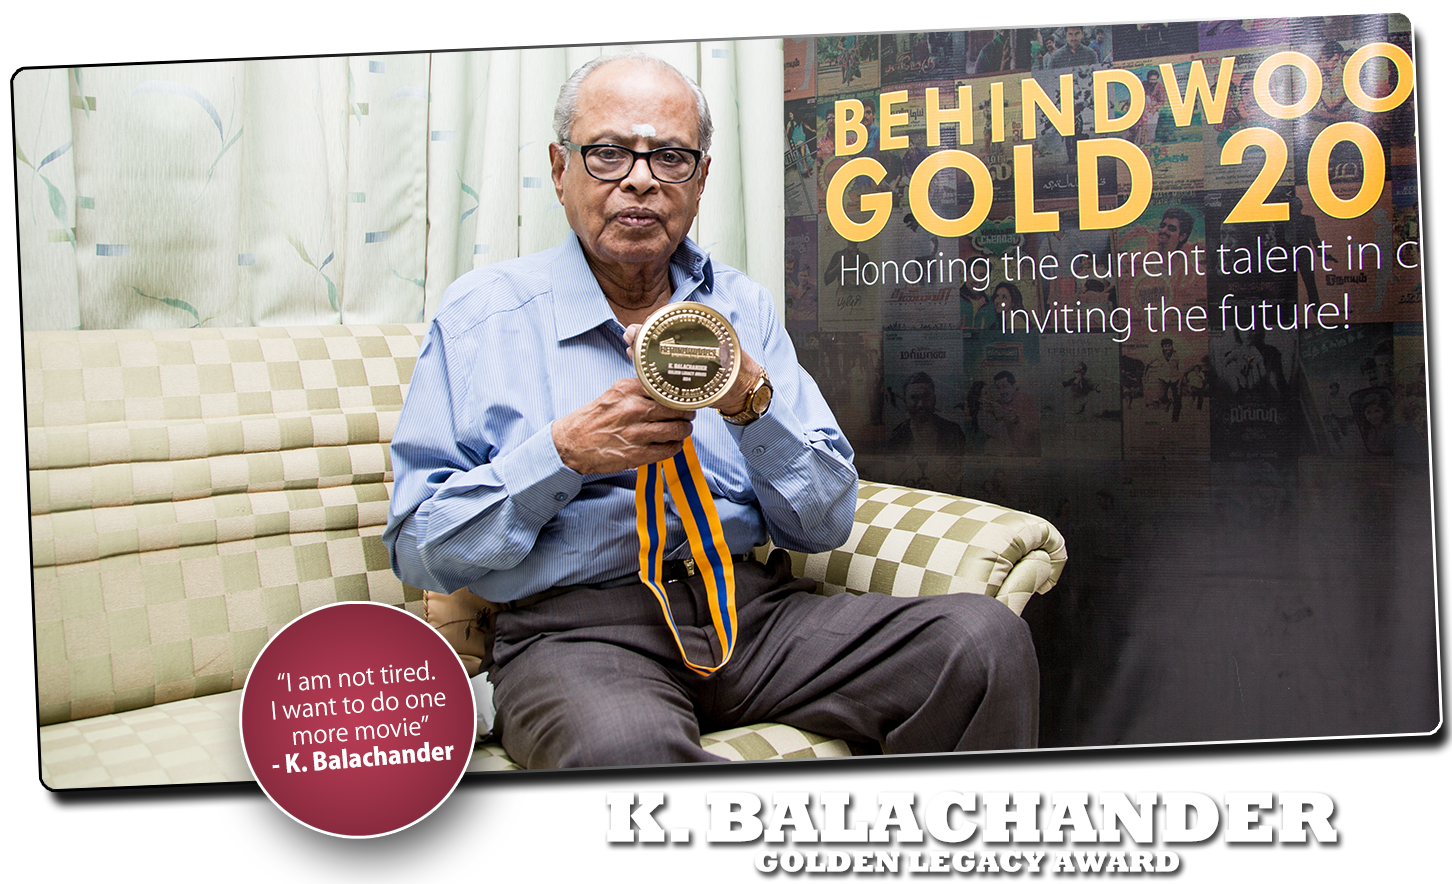 K.BALACHANDER - Behindwoods Gold Medal Winner 2013